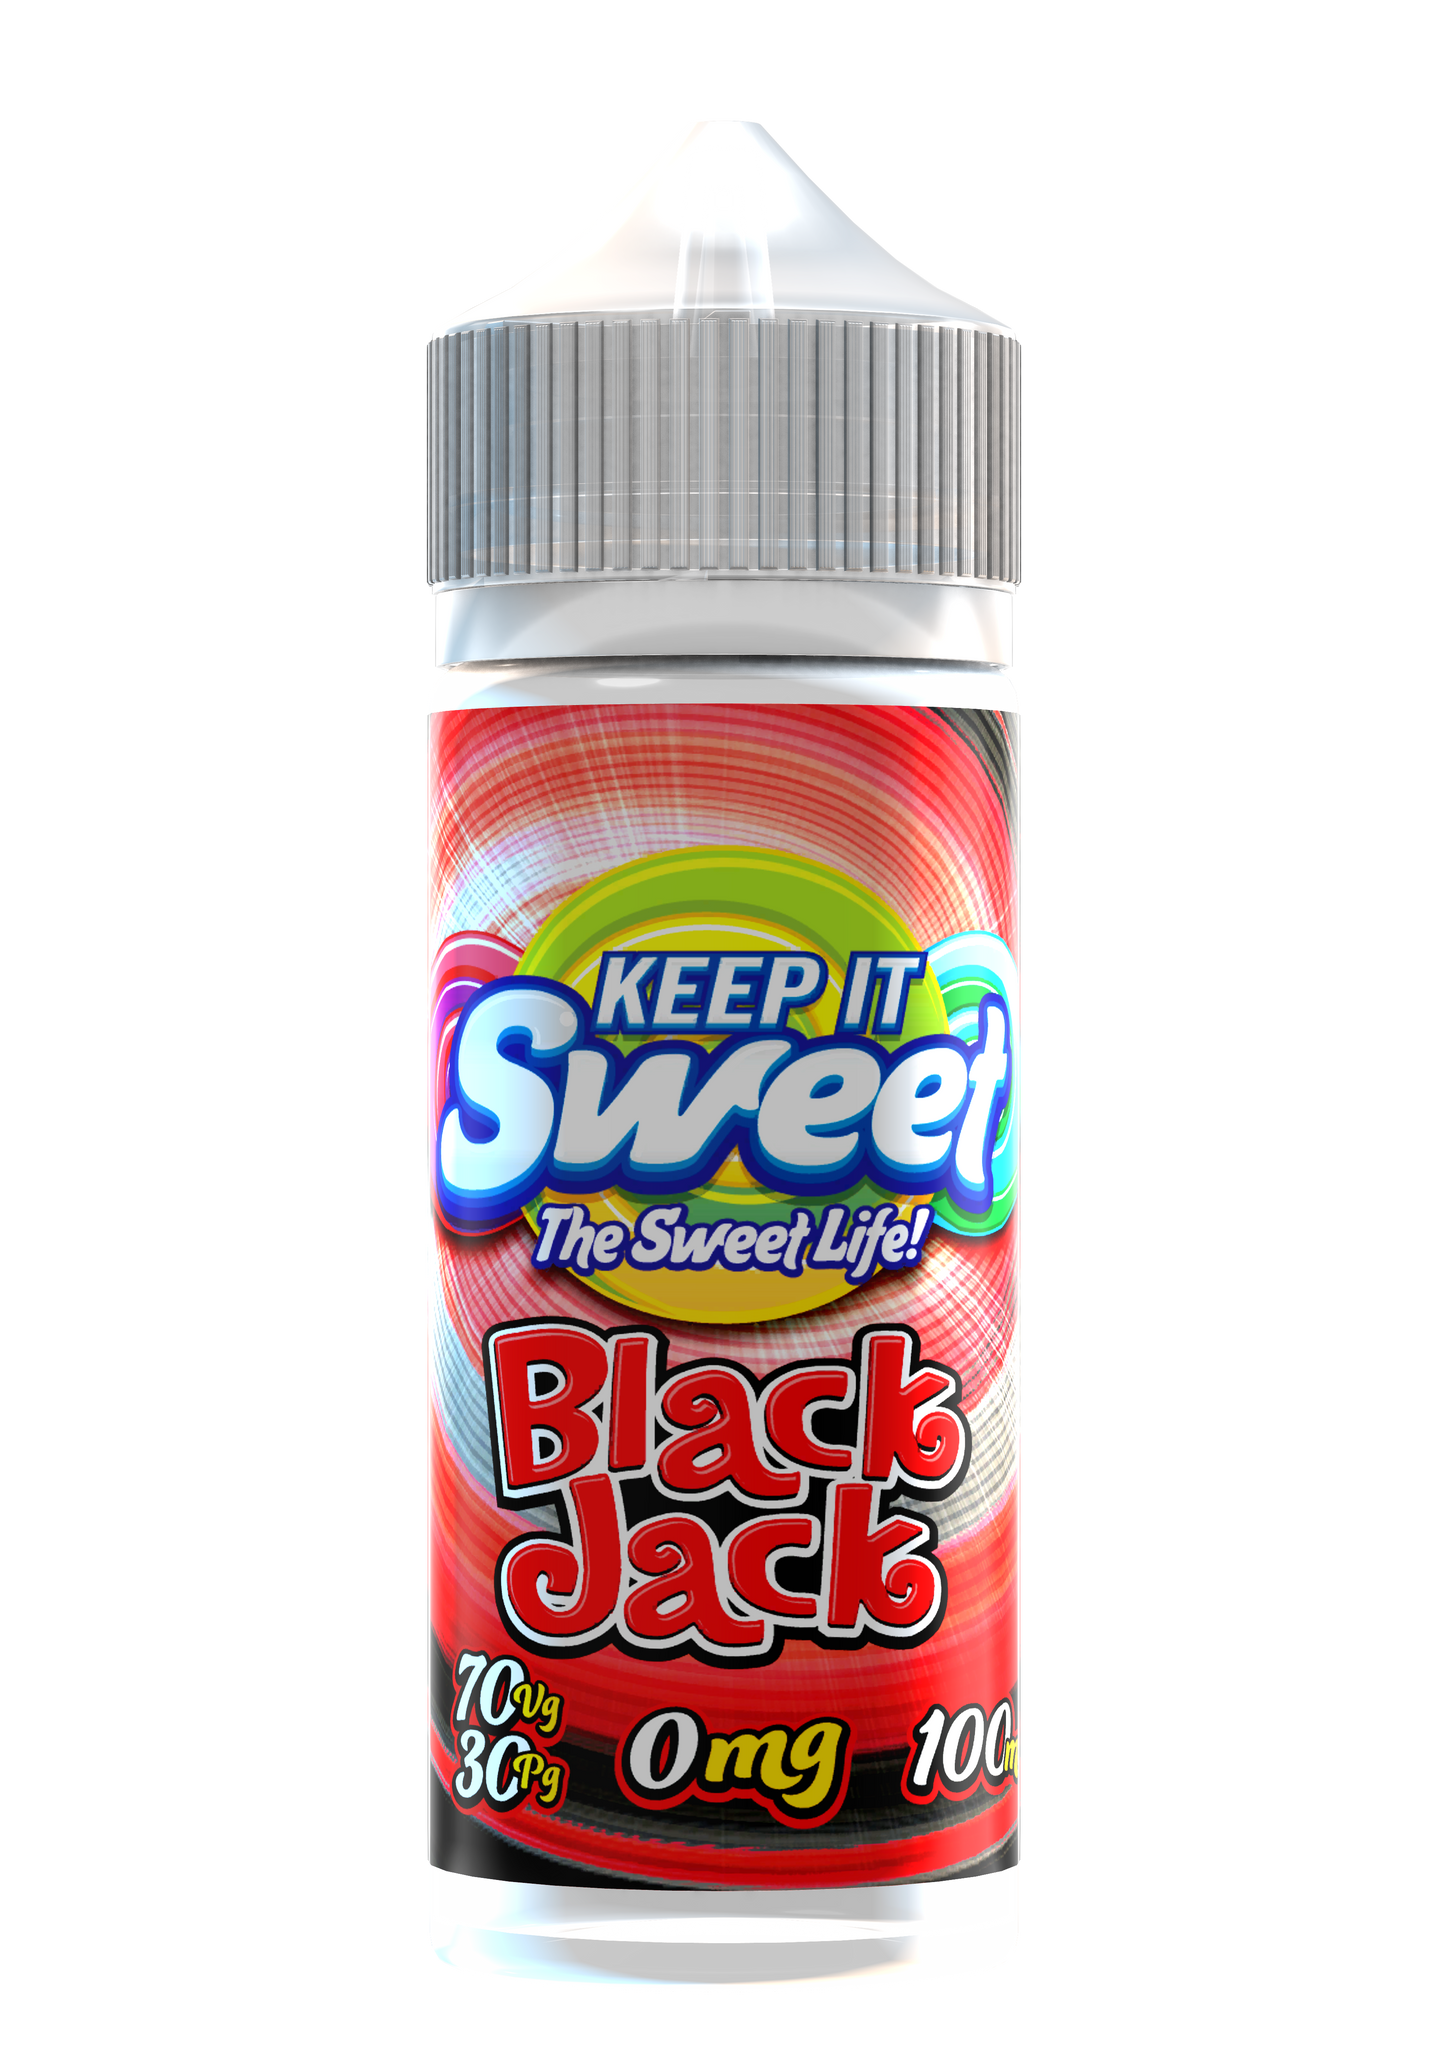 Keep it Sweet Black Jack